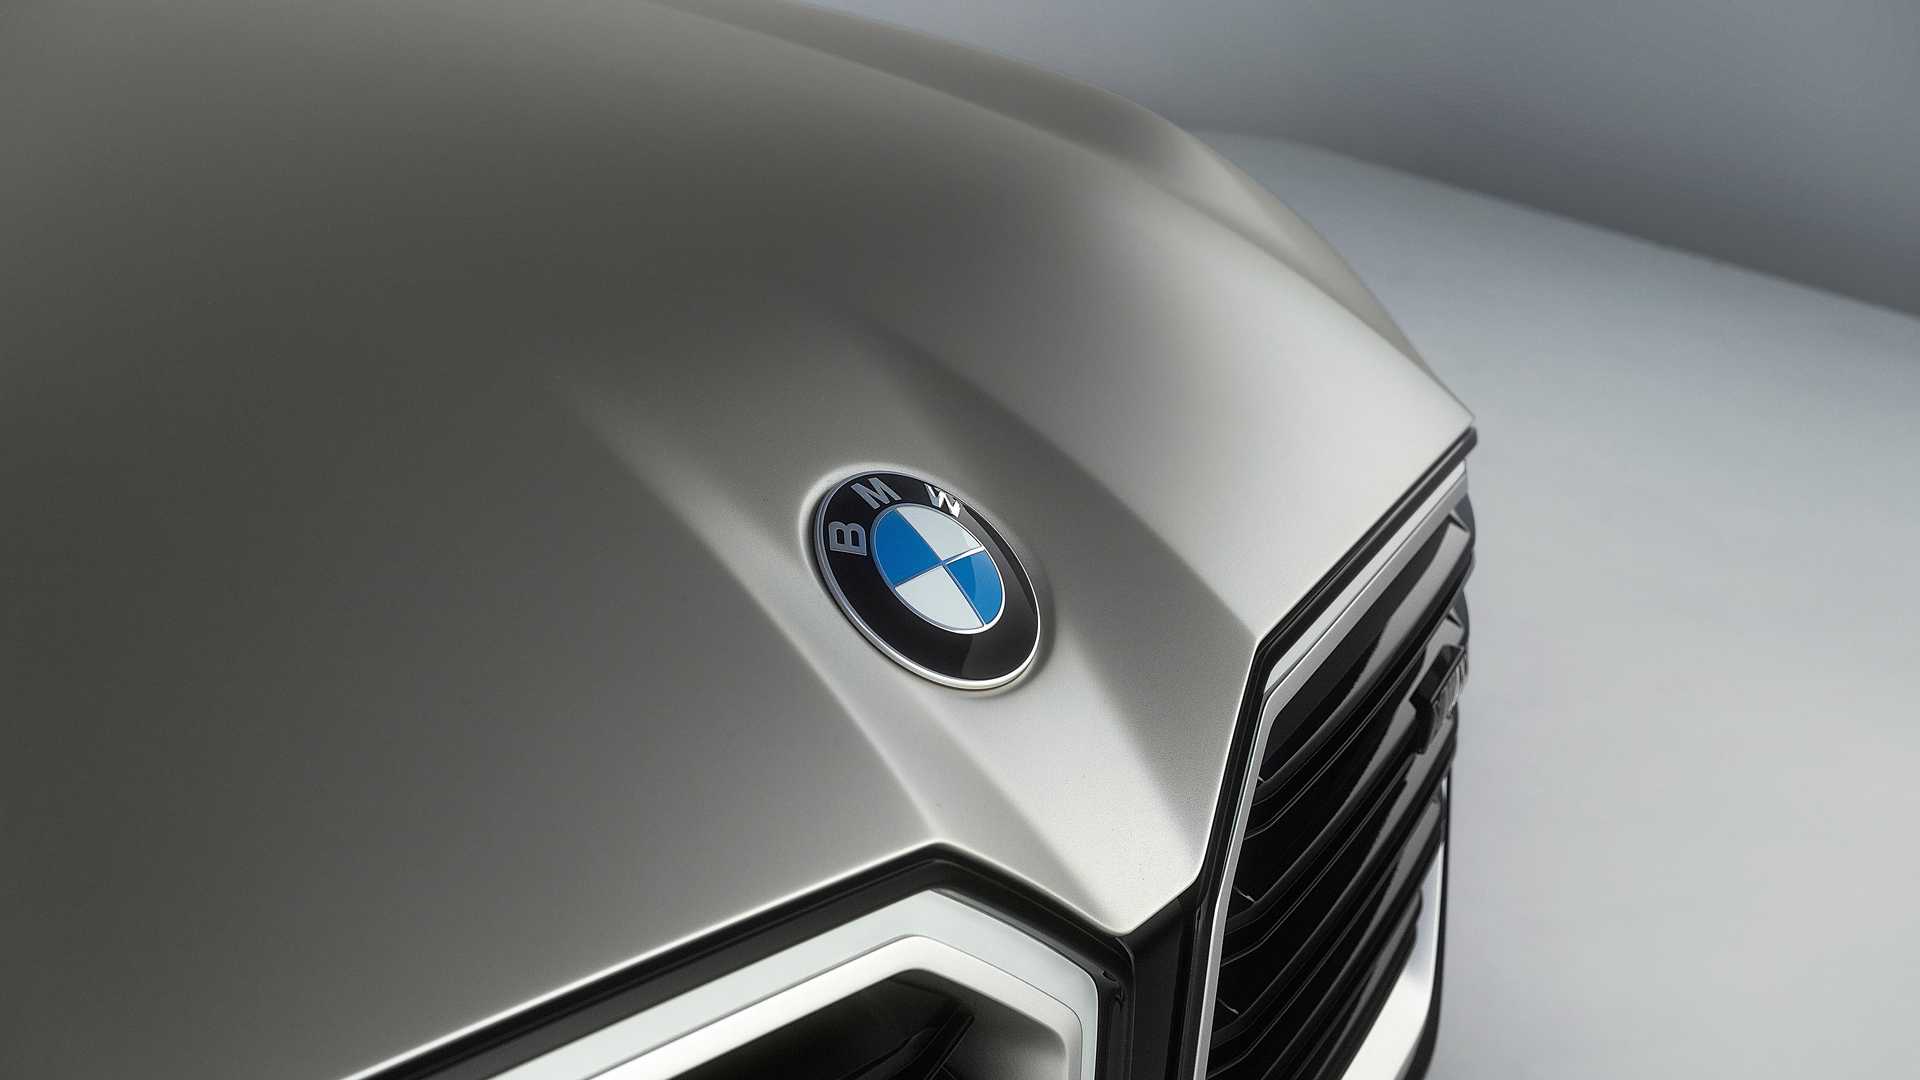 Itt az új Plug-in BMW koncepció